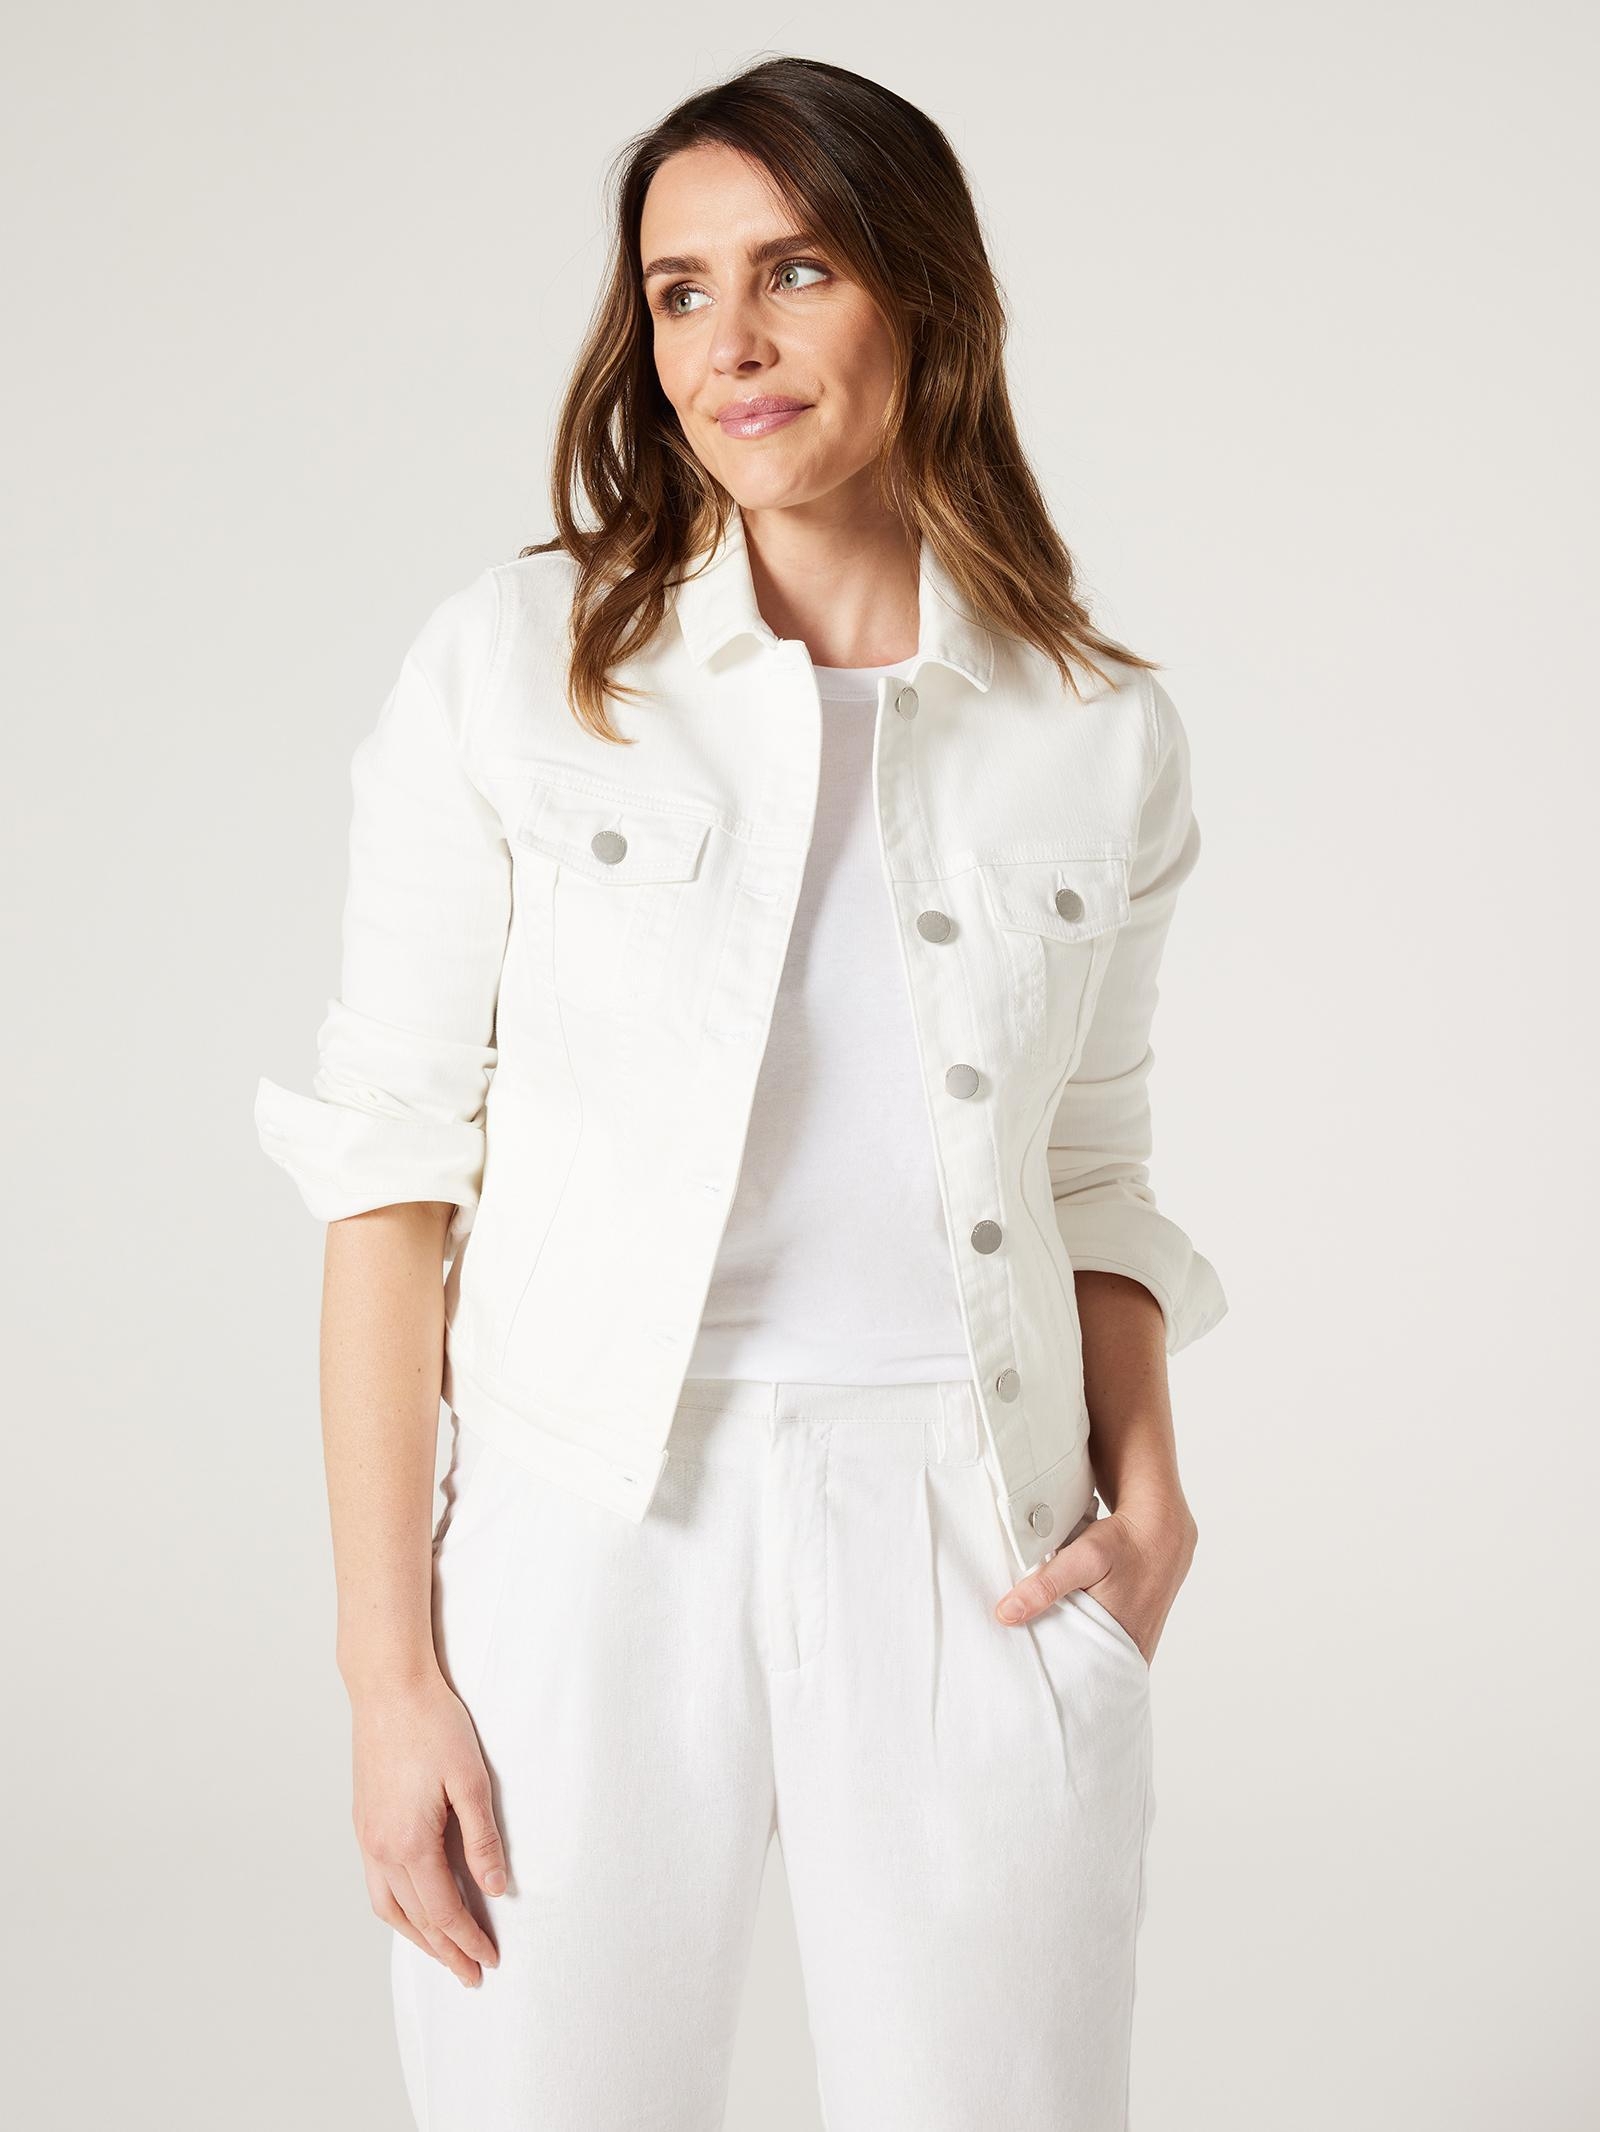 Stella Velma Denim Jacket in White | iCLOTHING - iCLOTHING